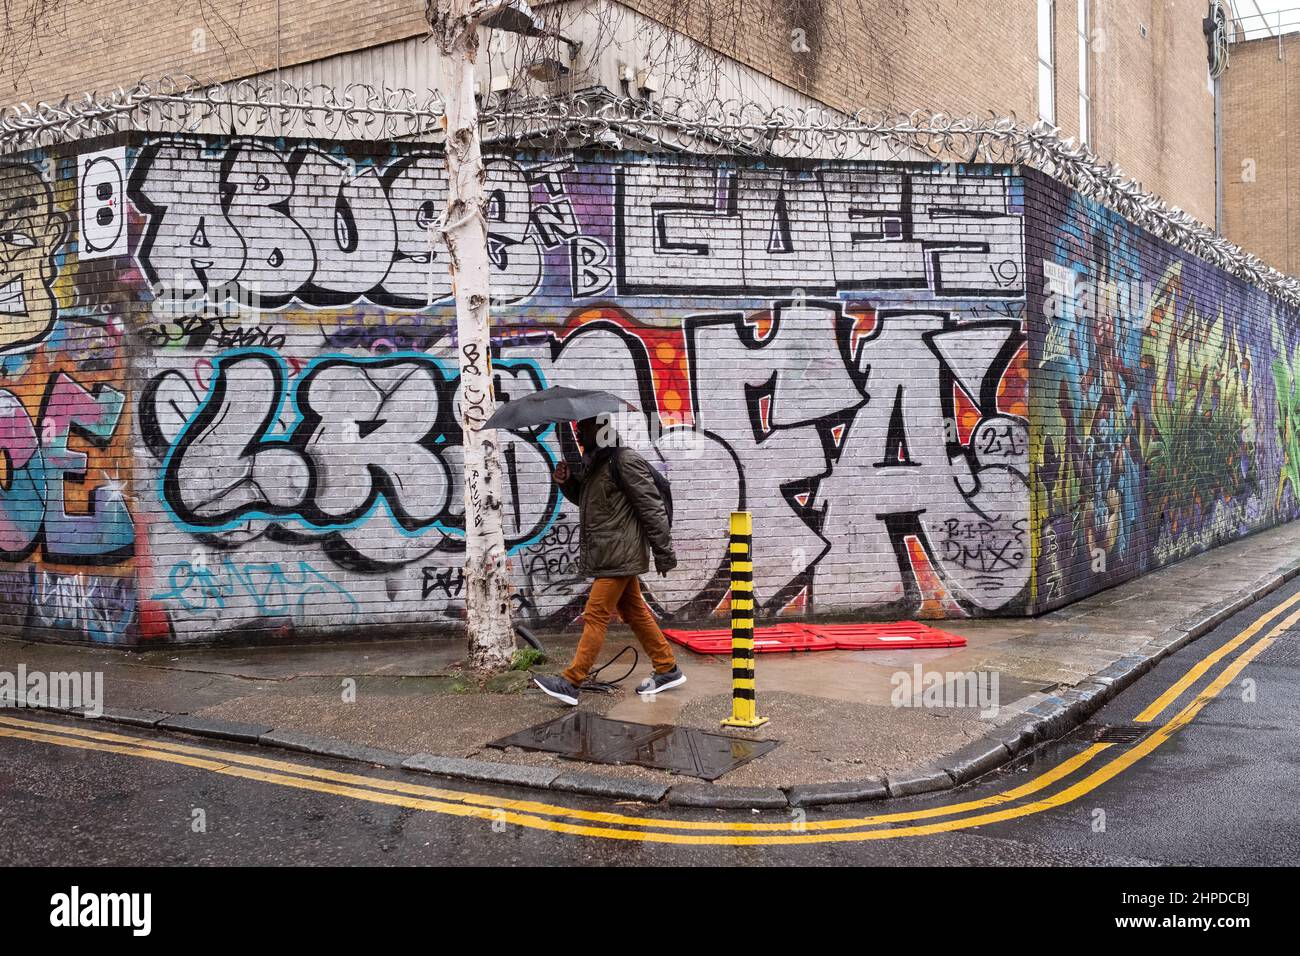 Graffiti all'angolo tra Gray Eagle Street e Quaker Street, Spitalfields E1 London UK. Questa zona è un focolaio di Street art. Foto Stock